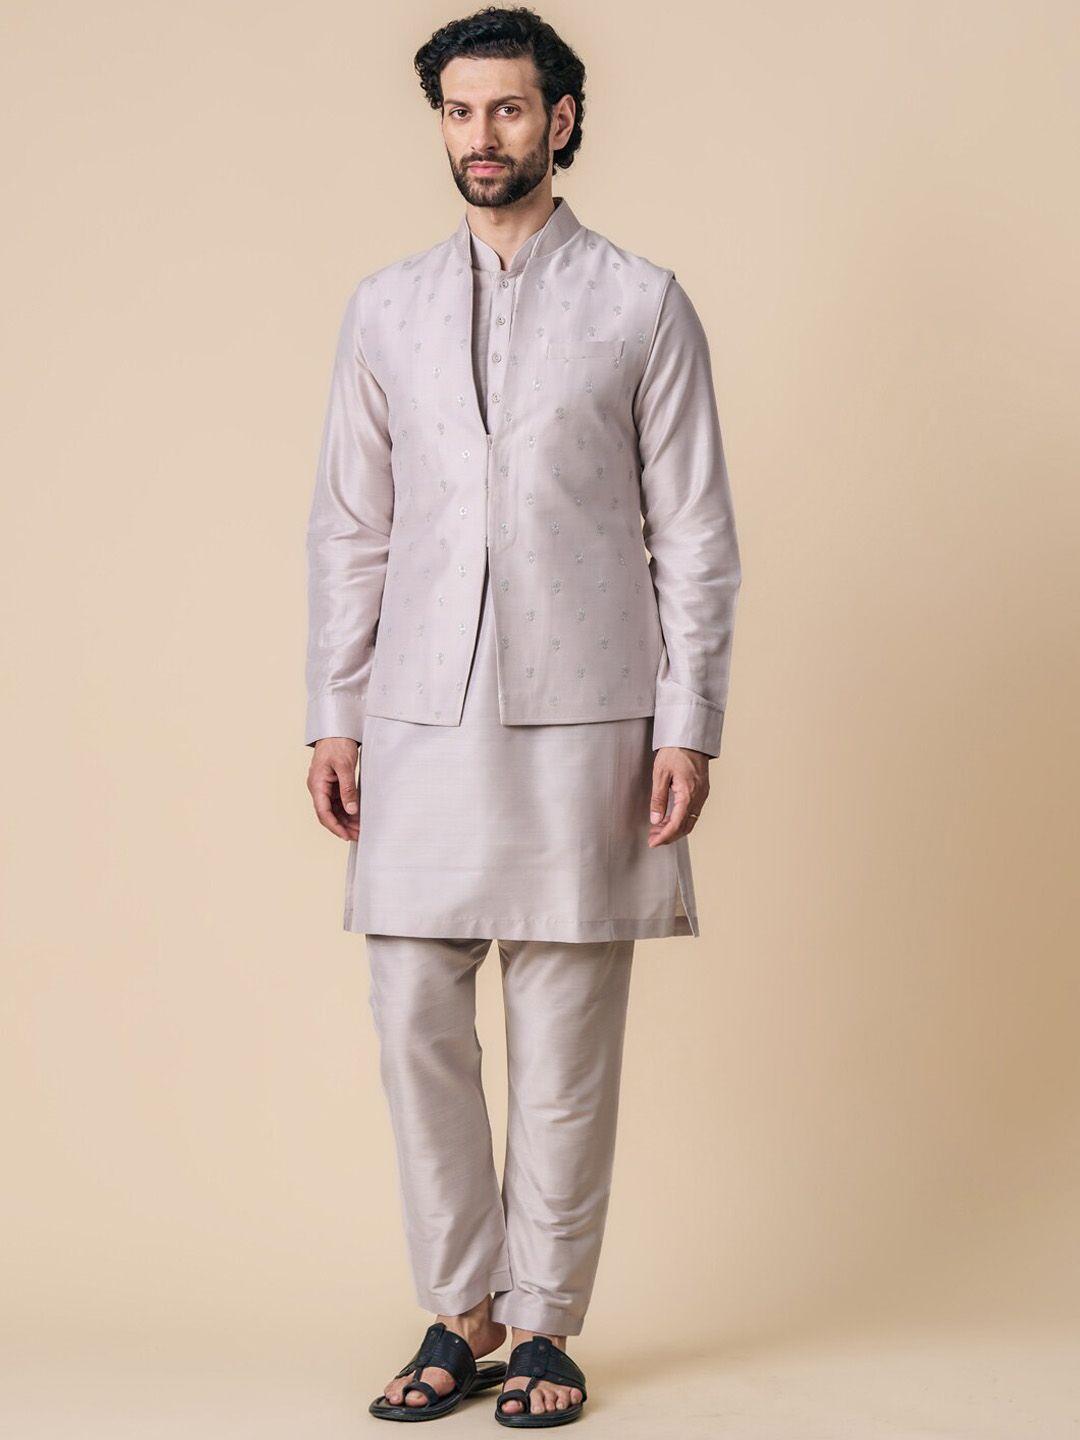 tasva straight kurta with pyjamas & nehru jacket